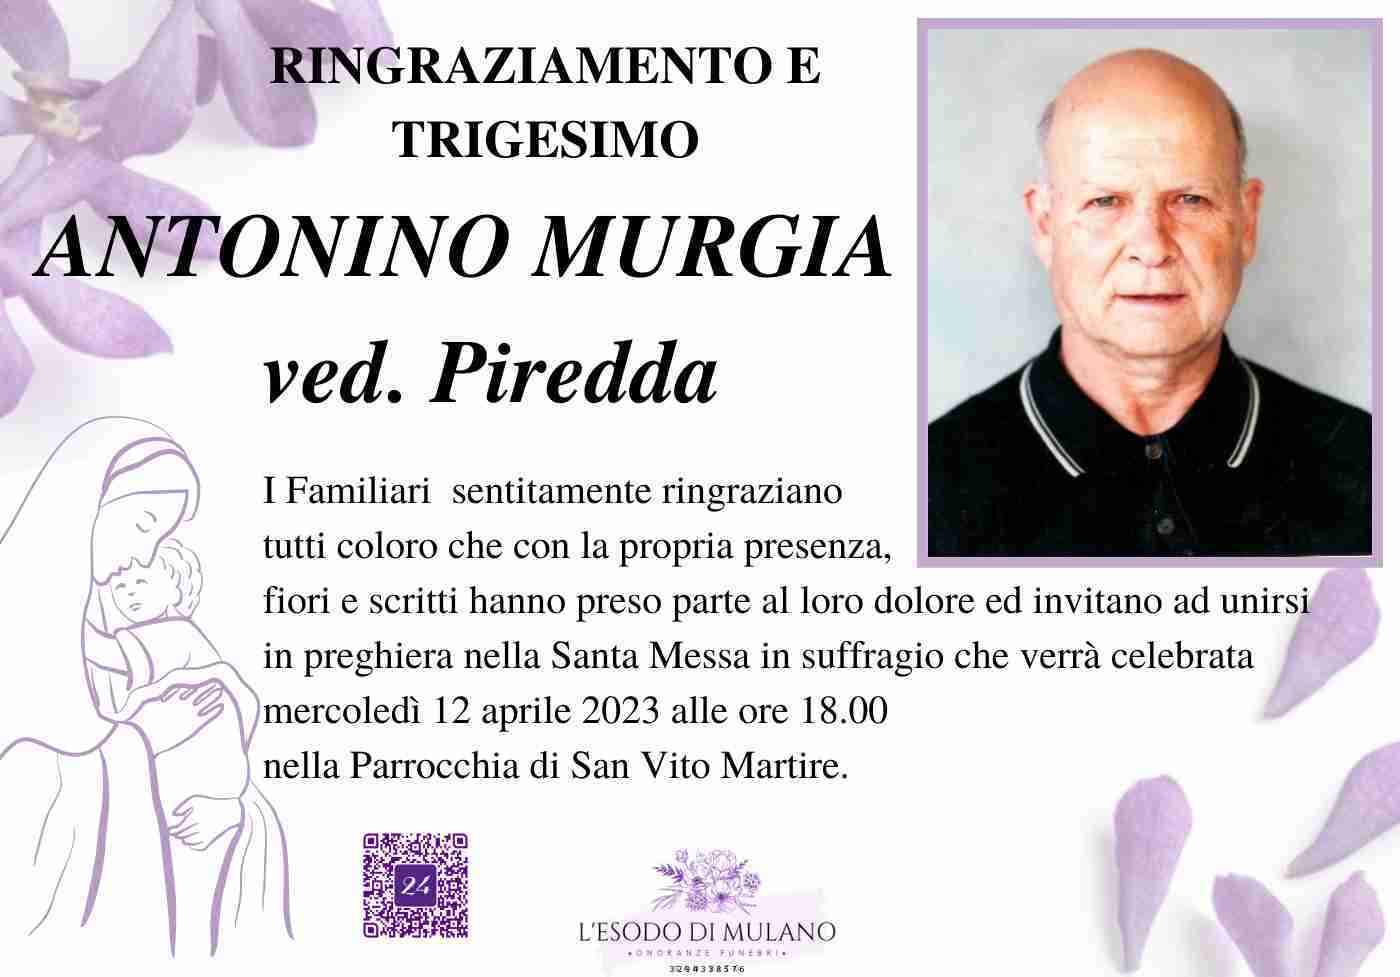 Antonino Murgia